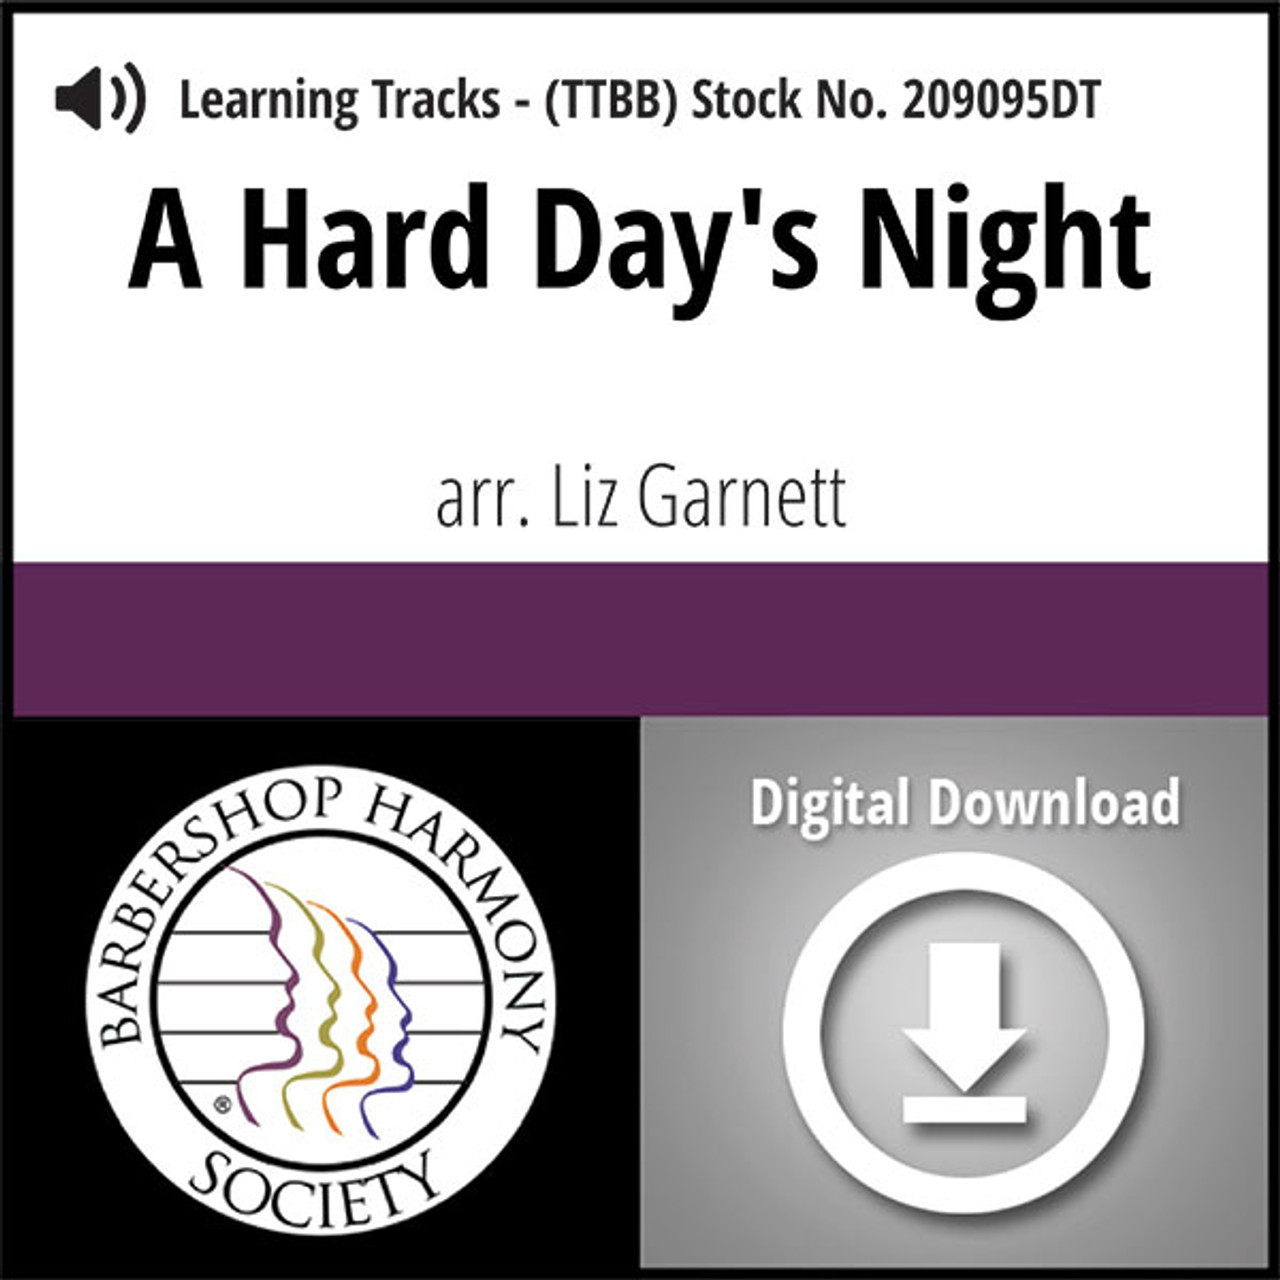 A Hard Day's Night (TTBB) (Garnett) - Digital Learning Tracks for 209094